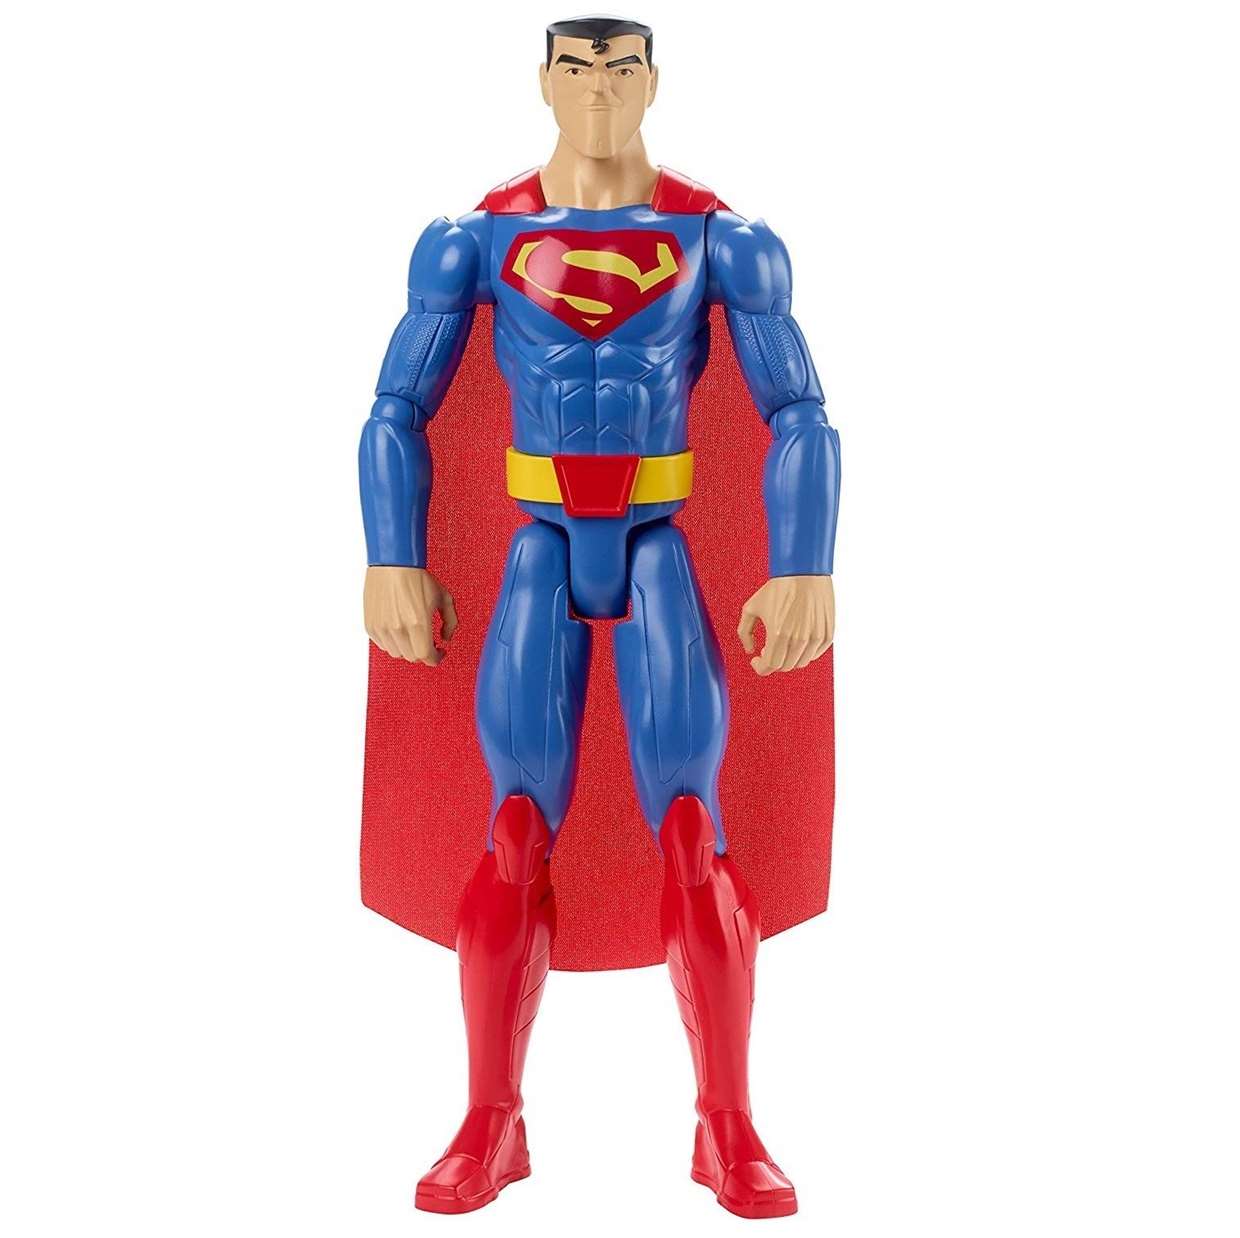 Superman Figura Dc Justice League Action Mattel 12 PuLG